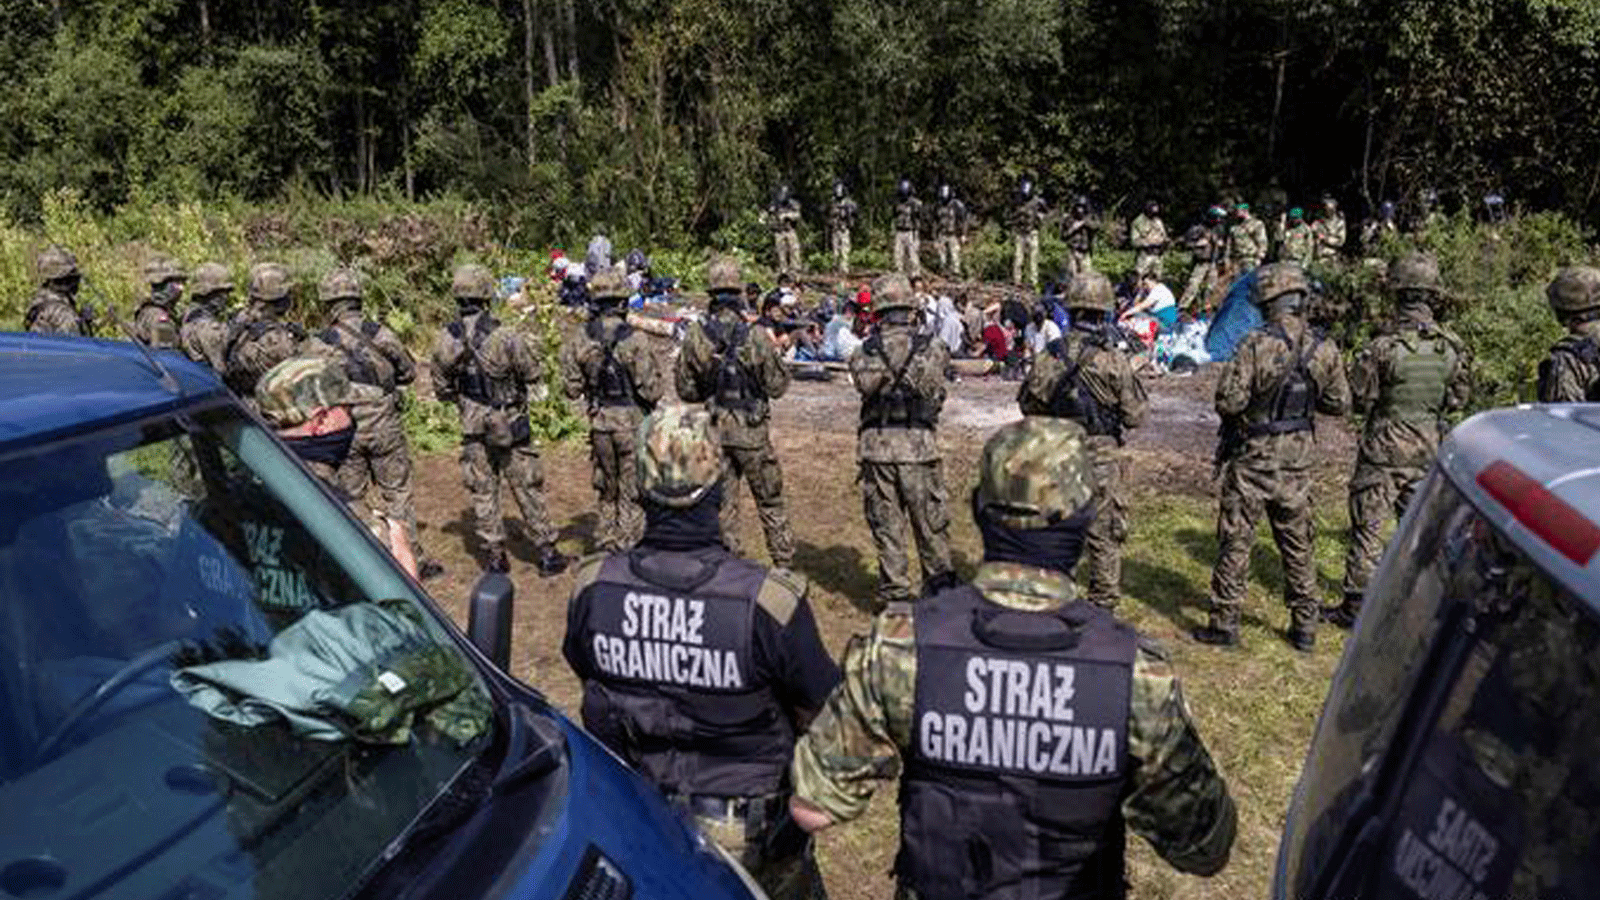 حرس الحدود البولنديون يقفون بمواجهة المهاجرين في قرية أوسنارز غورني الصغيرة، بالقرب من الحدود مع بيلاروسيا. في 20 آب/ أغسطس 2021